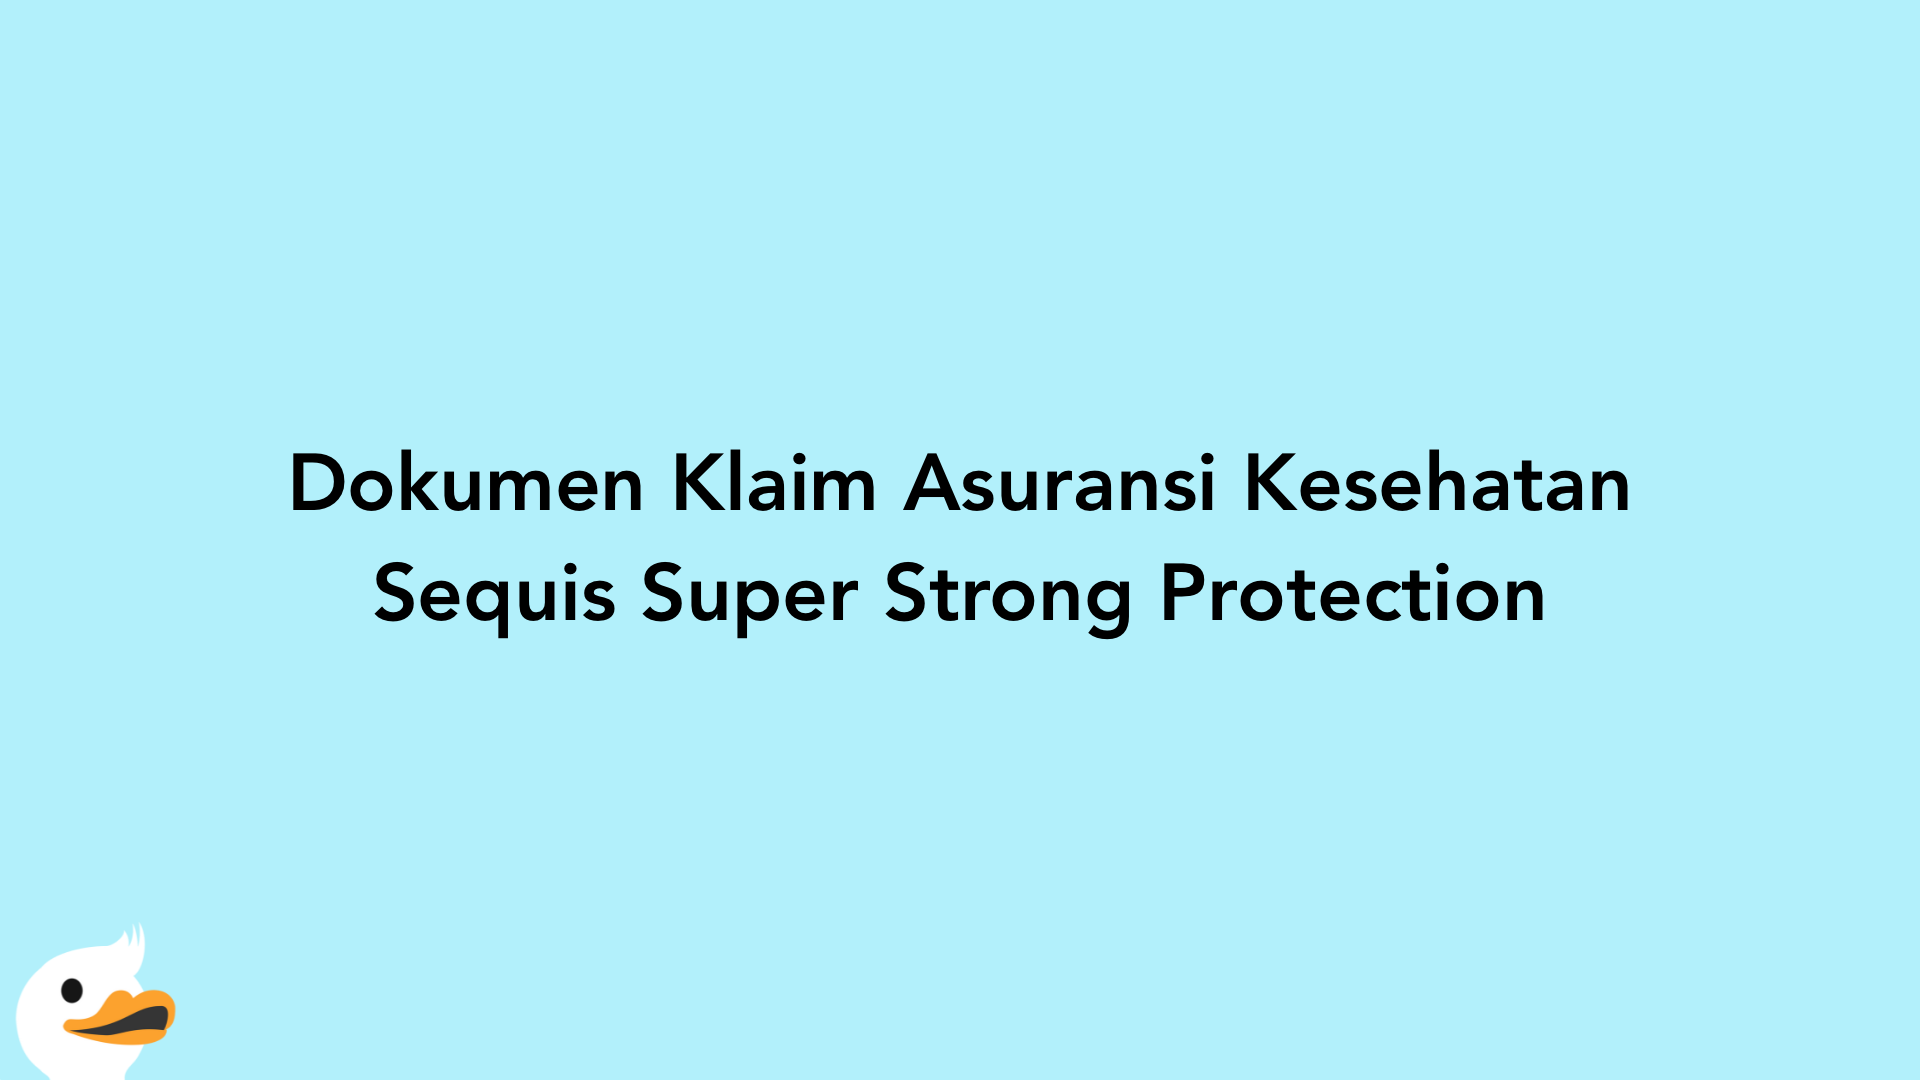 Dokumen Klaim Asuransi Kesehatan Sequis Super Strong Protection